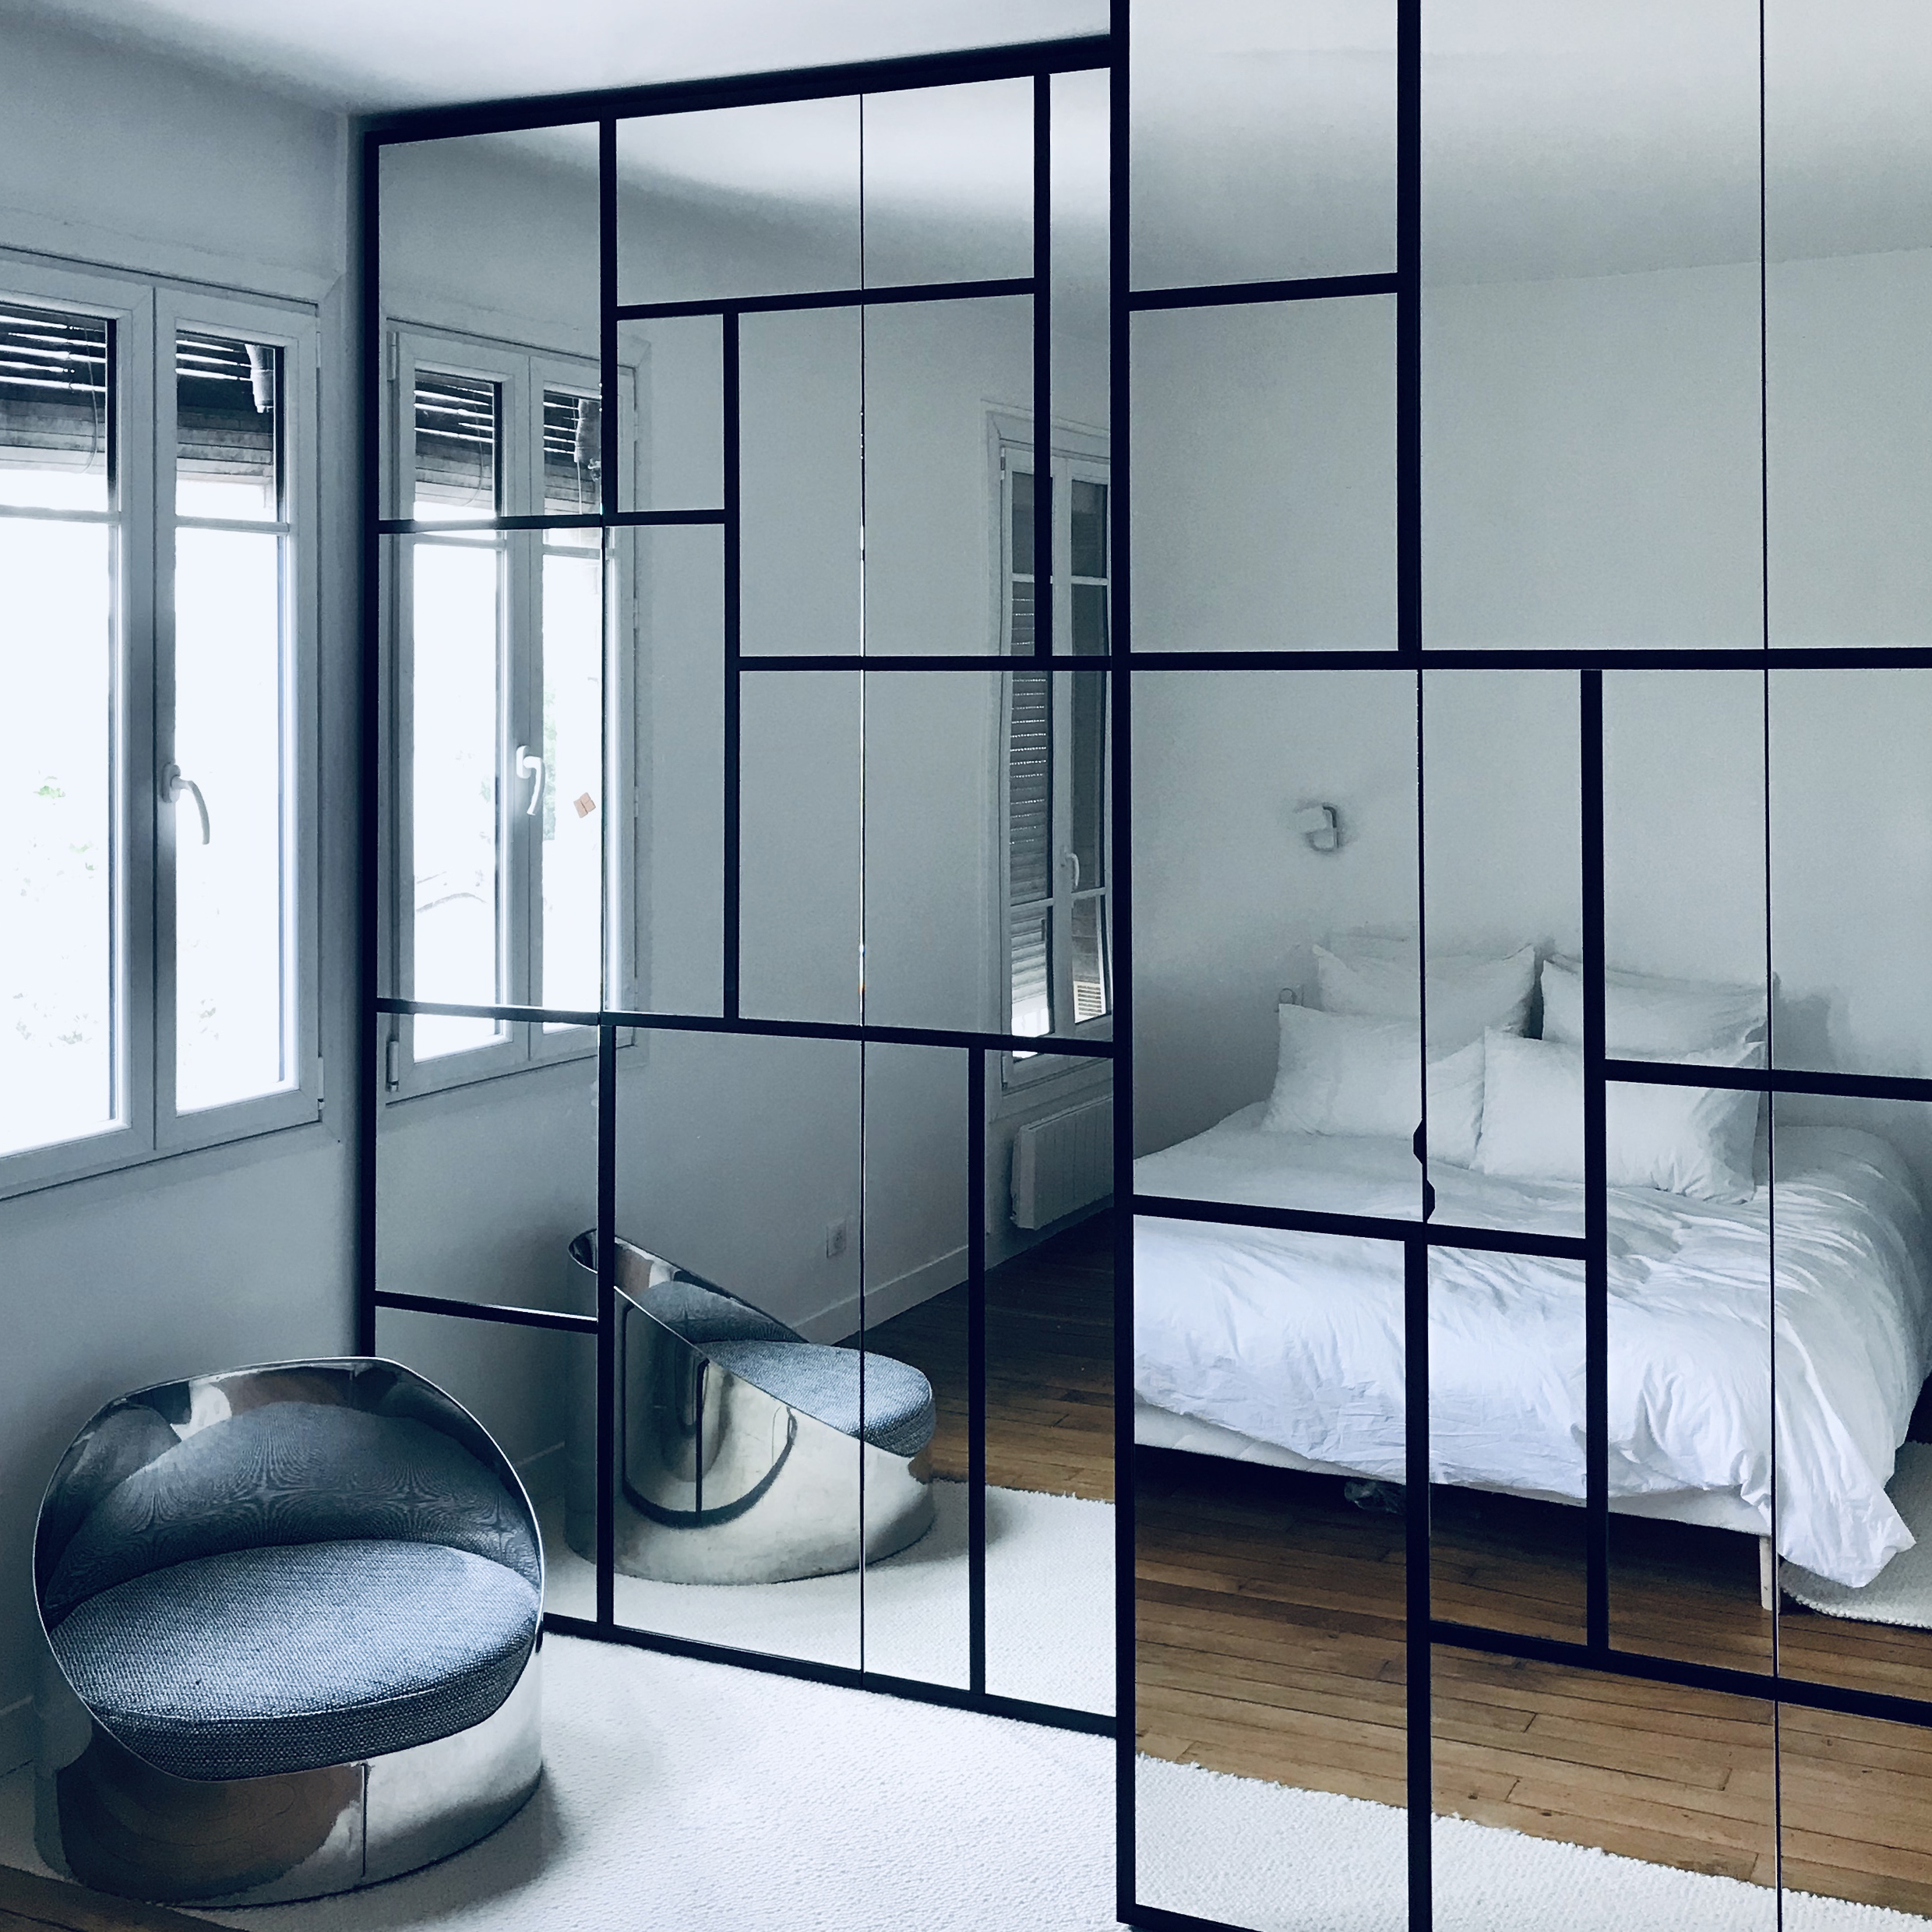 Miroirs et stratifié noir mat, façon Mondrian